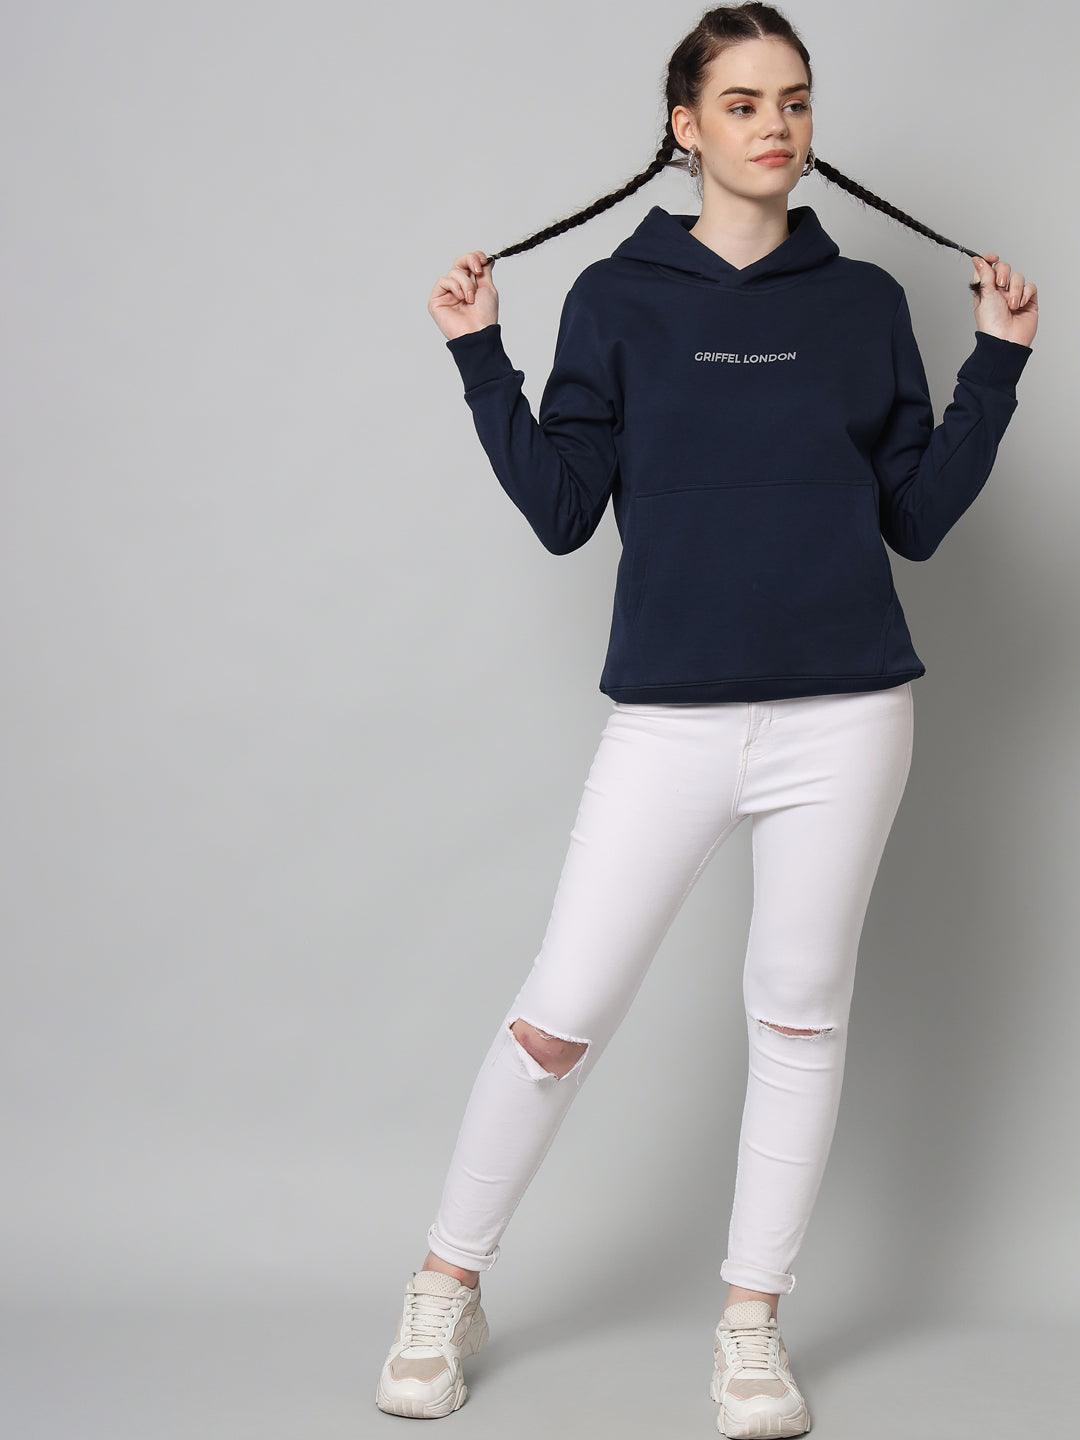 Griffel Women’s Cotton Fleece Full Sleeve Navy Hoodie Sweatshirt - griffel